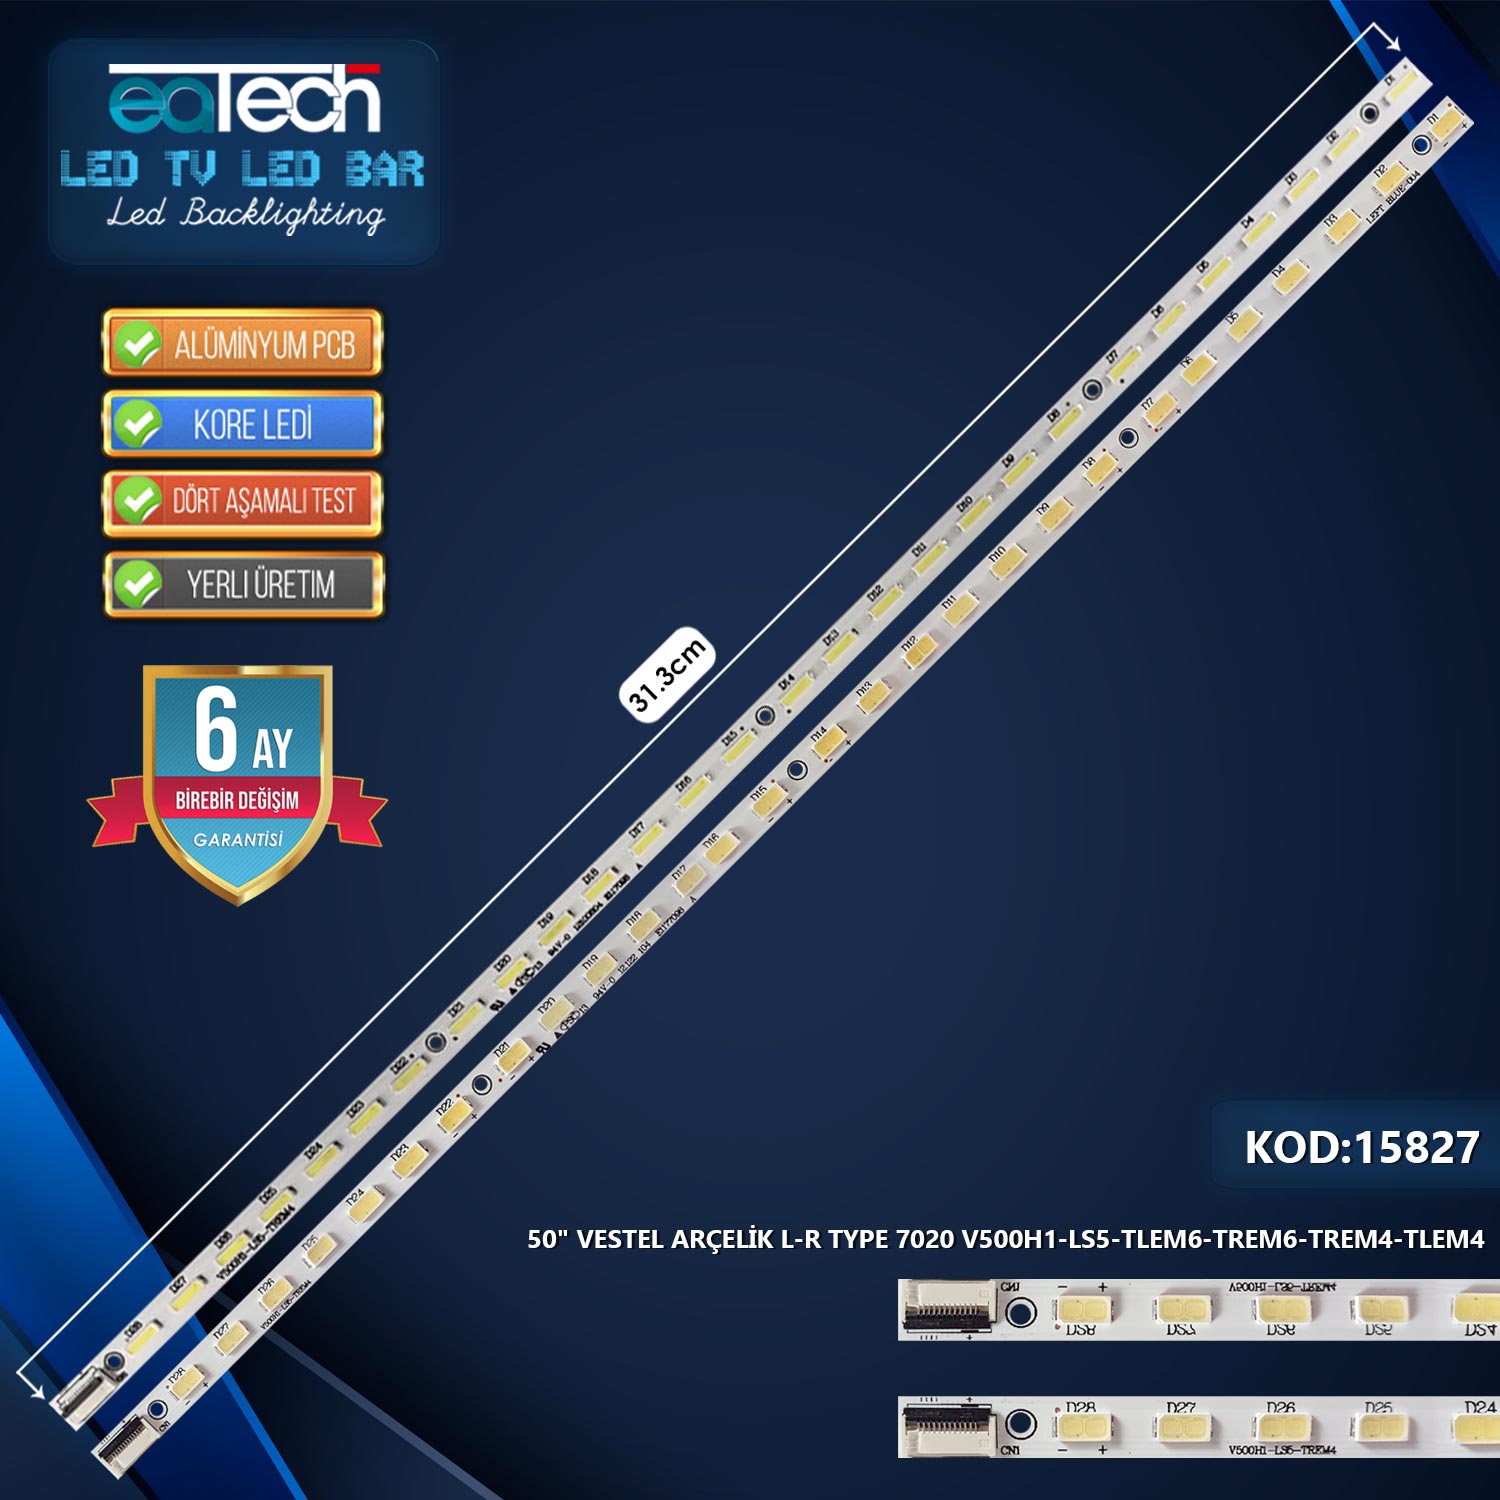 TAKIM LED-27 (1X501-1X502) 50 VESTEL ARÇELİK L-R TYPE 7020 V500H1-LS5-TLEM6-TREM6-TREM4-TLEM4